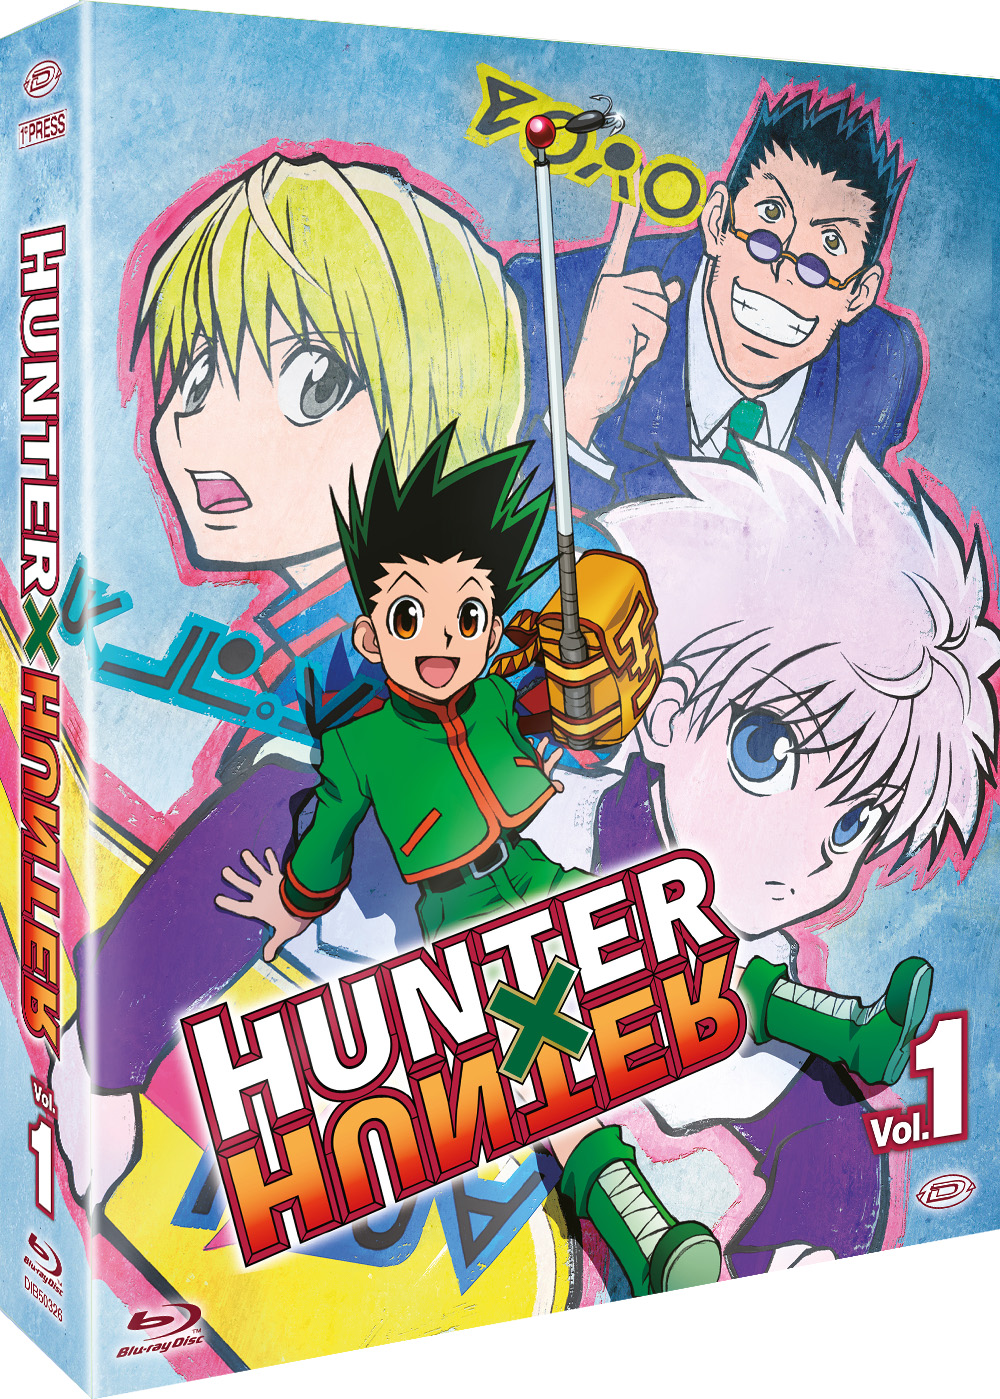 Blu-Ray Hunter X Hunter Box 1 - Esame Per Hunter (Eps 01-26) (4 Blu-Ray) (First Press) NUOVO SIGILLATO, EDIZIONE DEL 02/11/2022 SUBITO DISPONIBILE